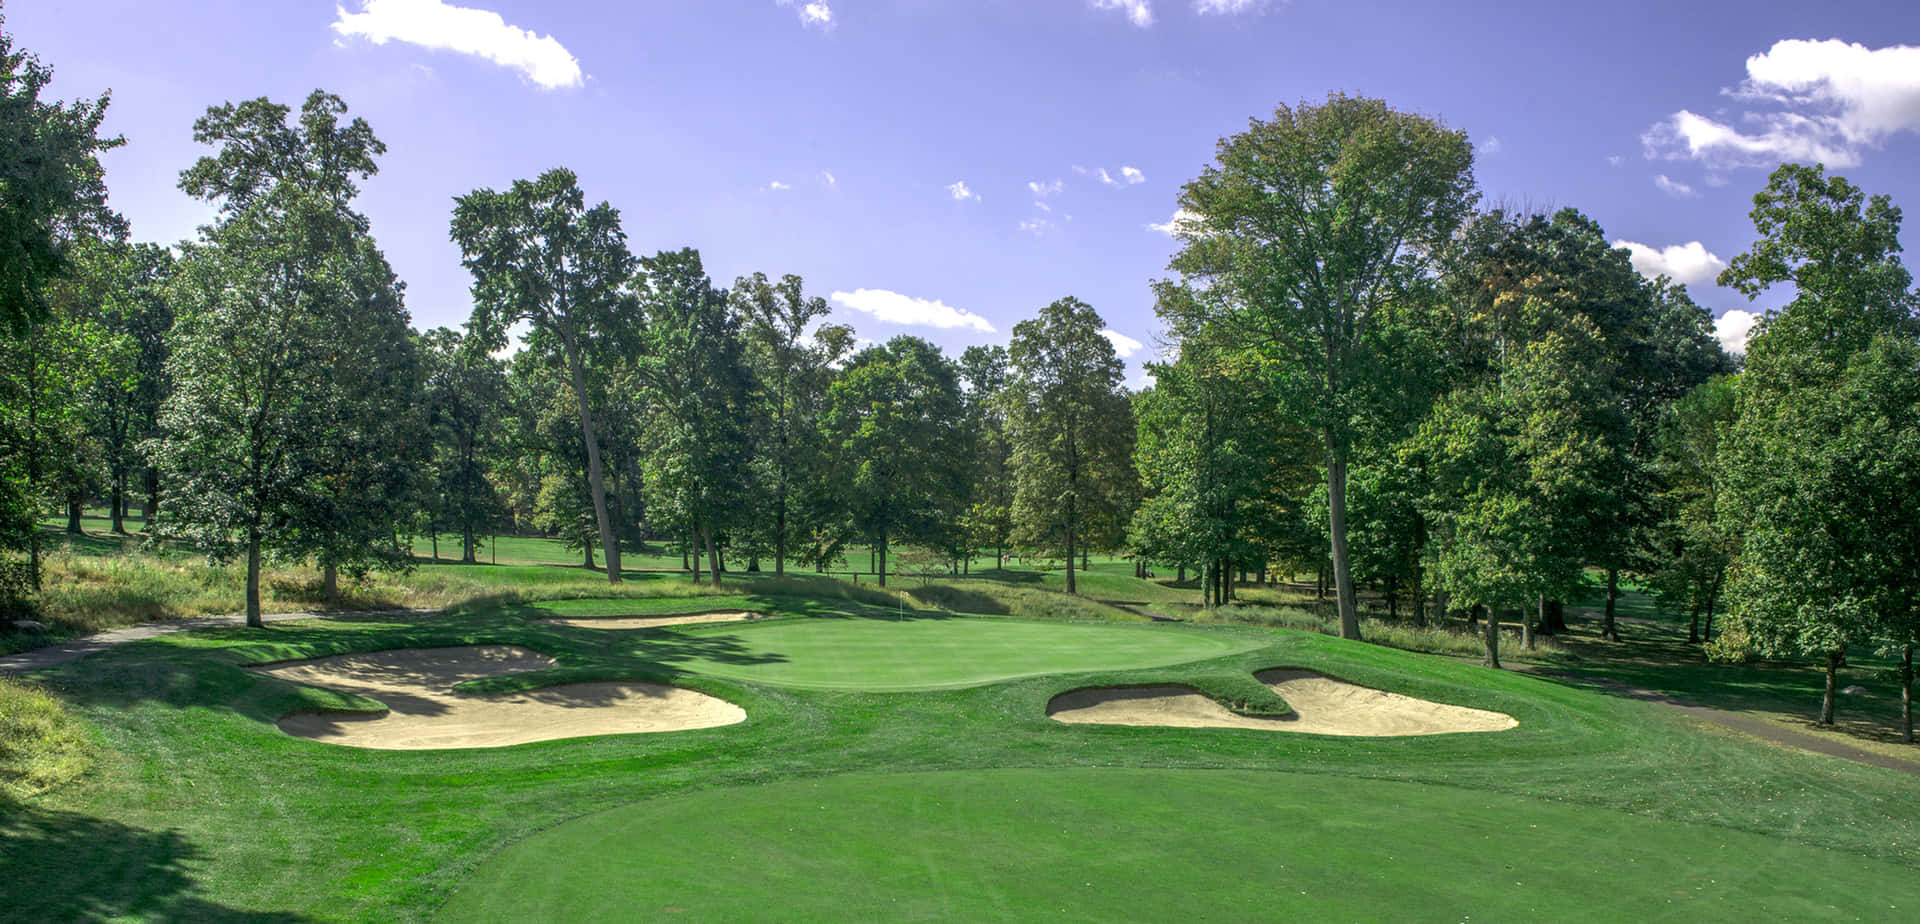 Golf Course Scenic Landscape Wallpaper